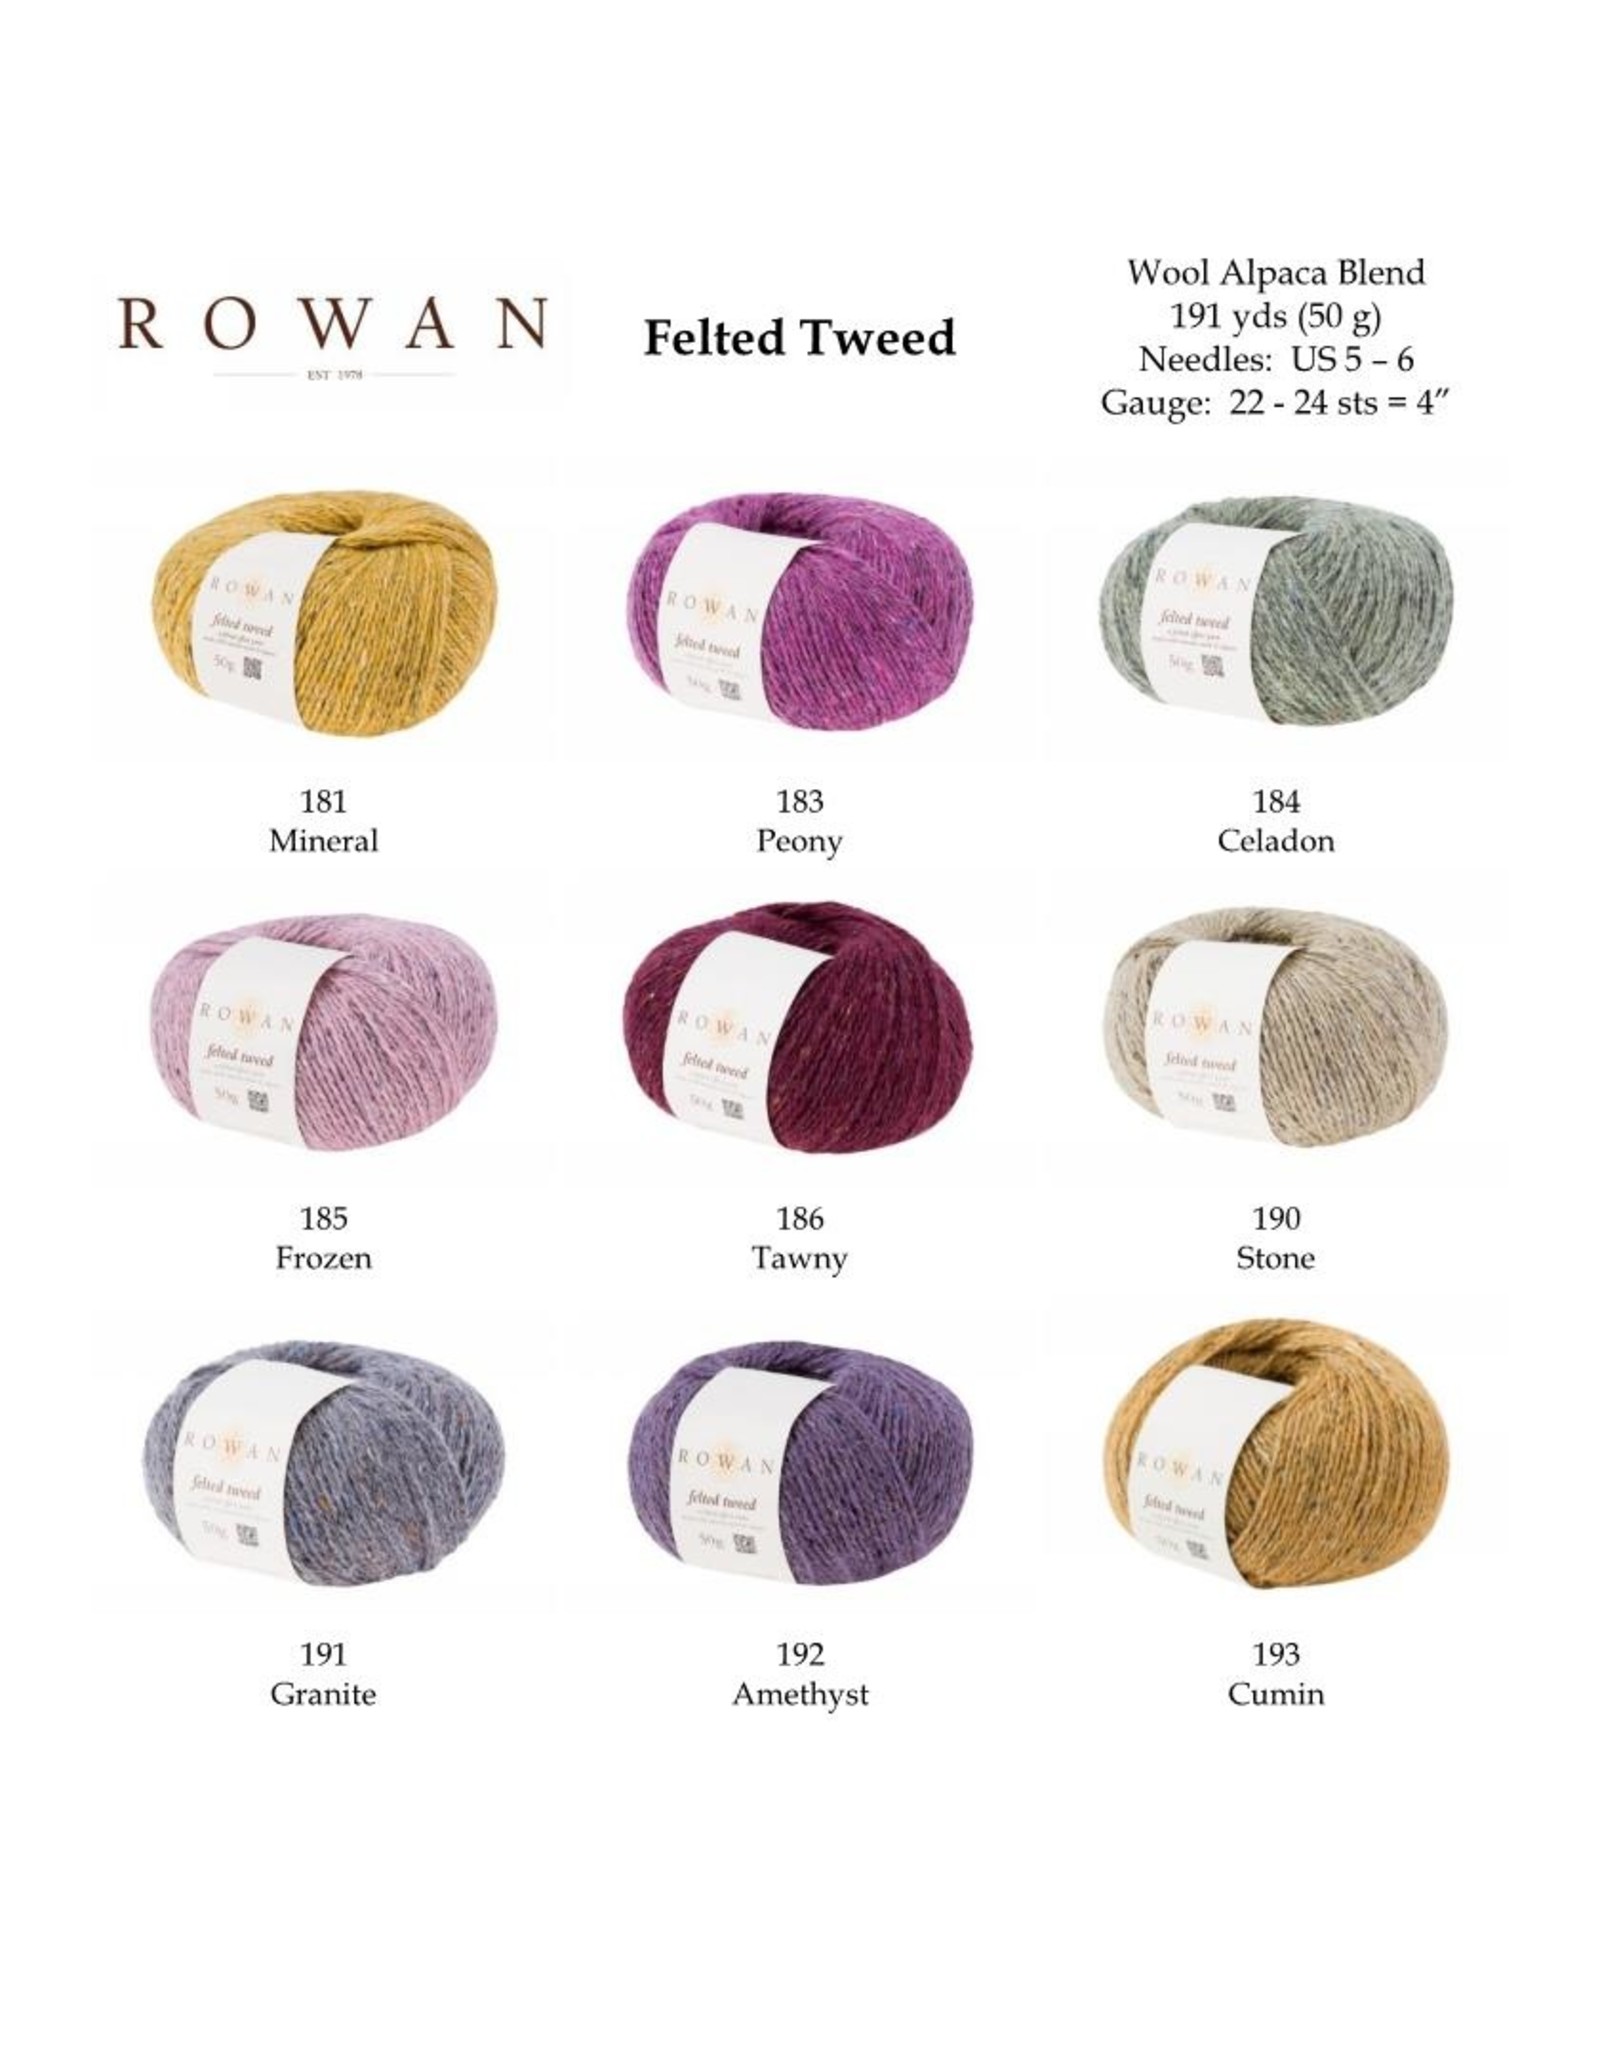 Rowan Rowan Felted Tweed